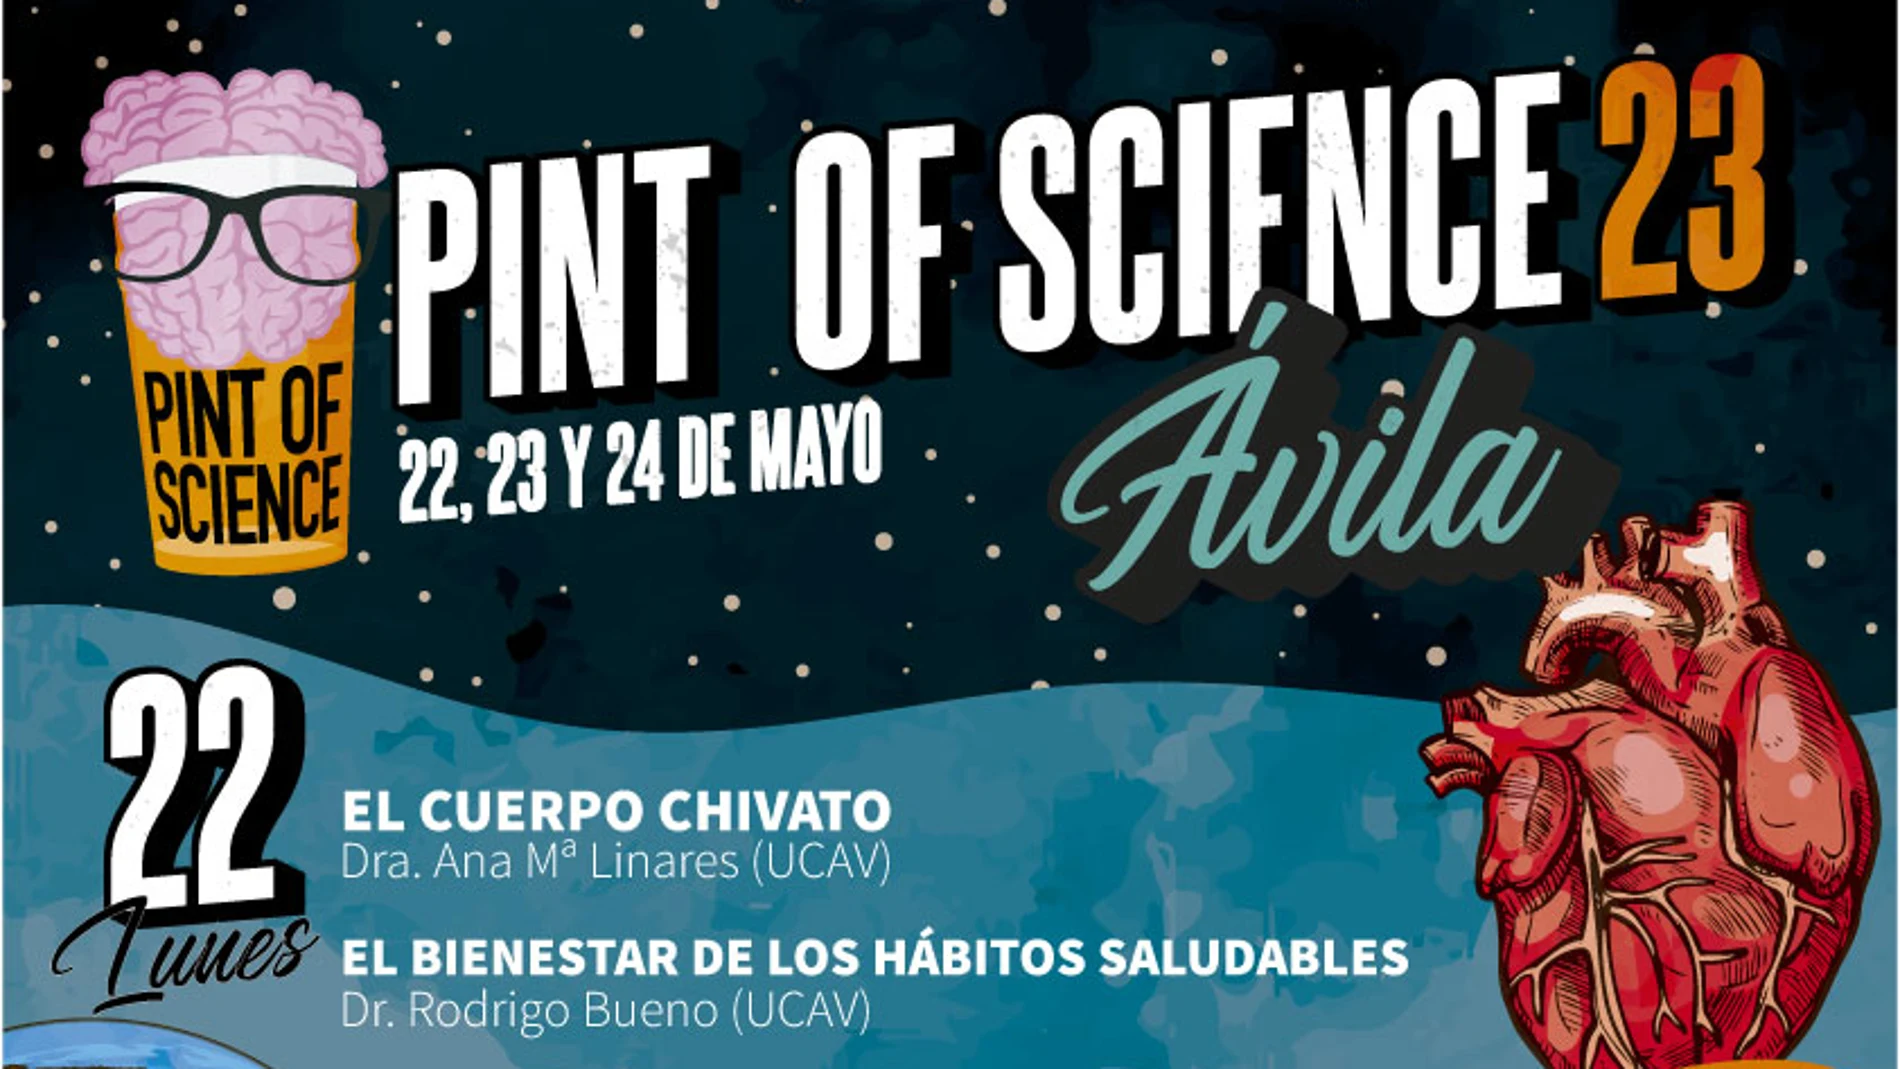 Cartel anunciador del festival de divulgación científica Pint of Science